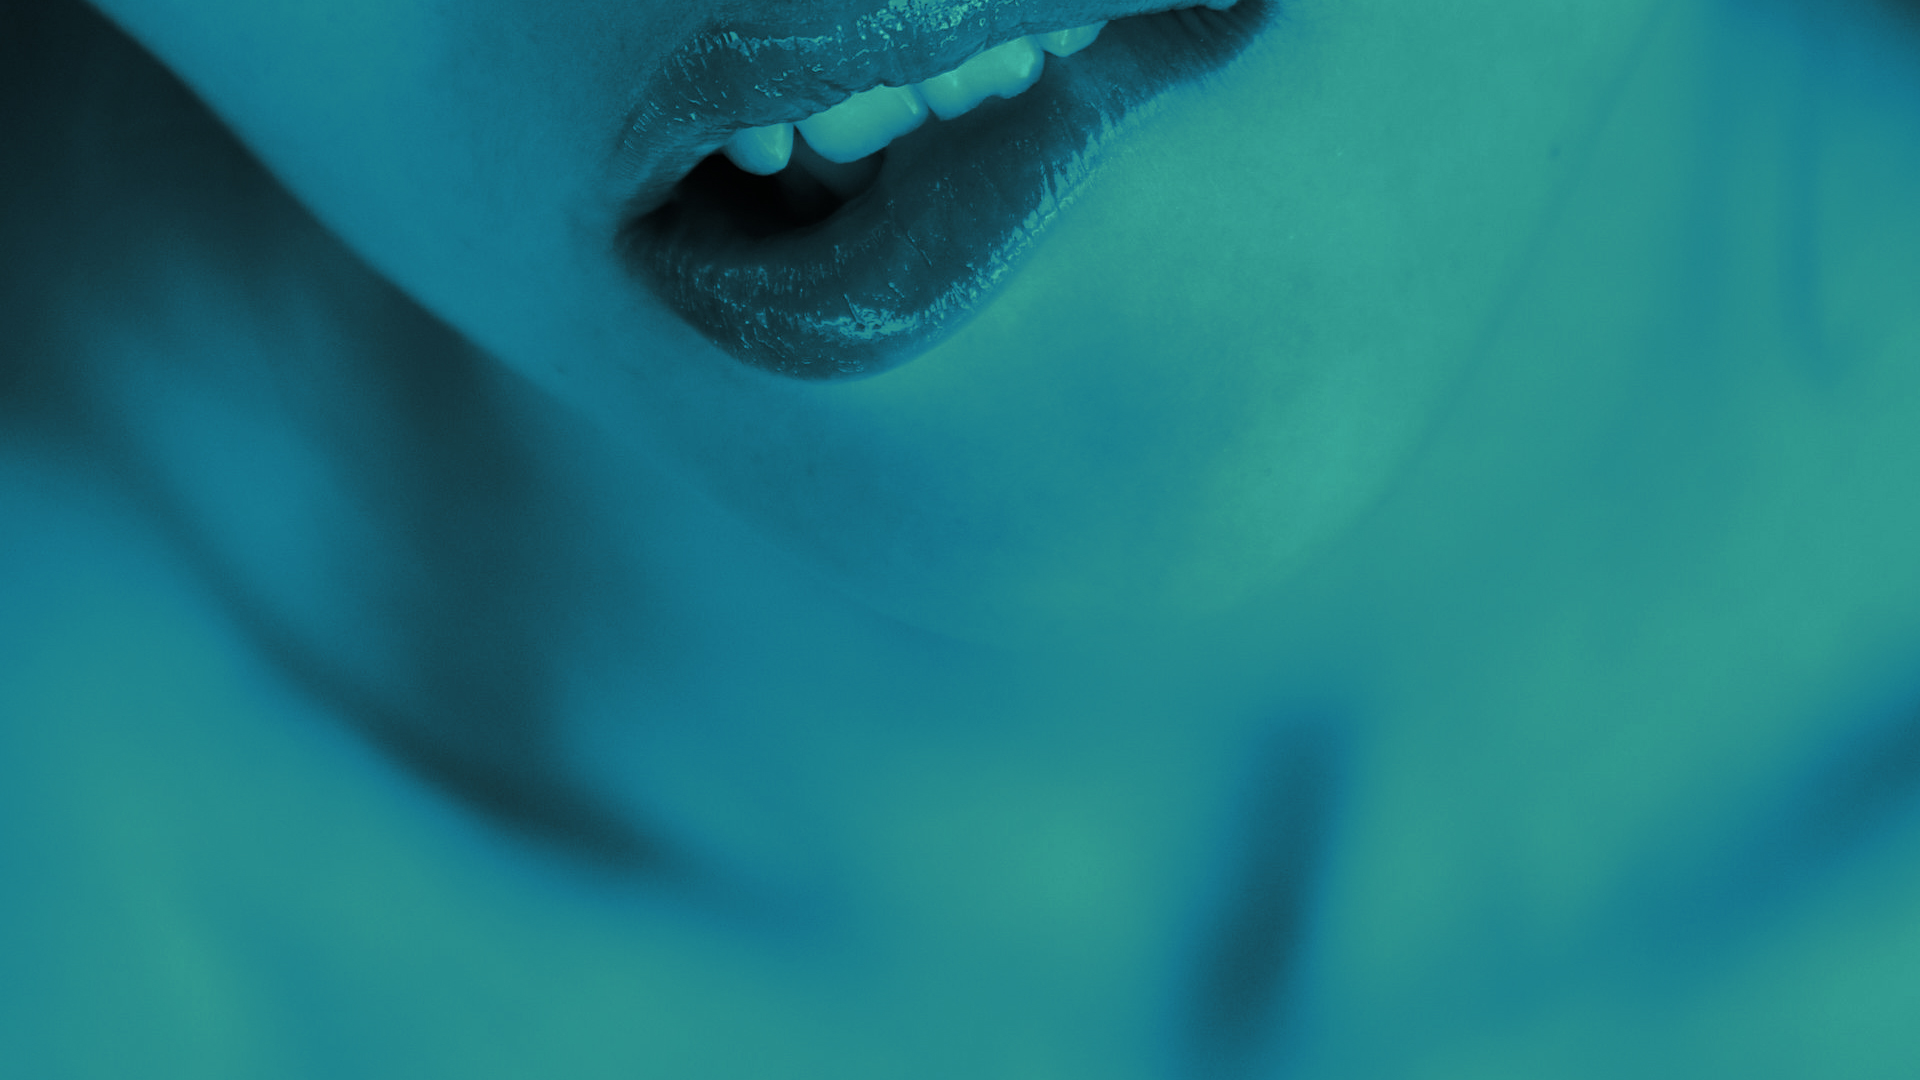 Lips Biting Lip Women Face Teeth Turquoise Cyan Closeup 1920x1080